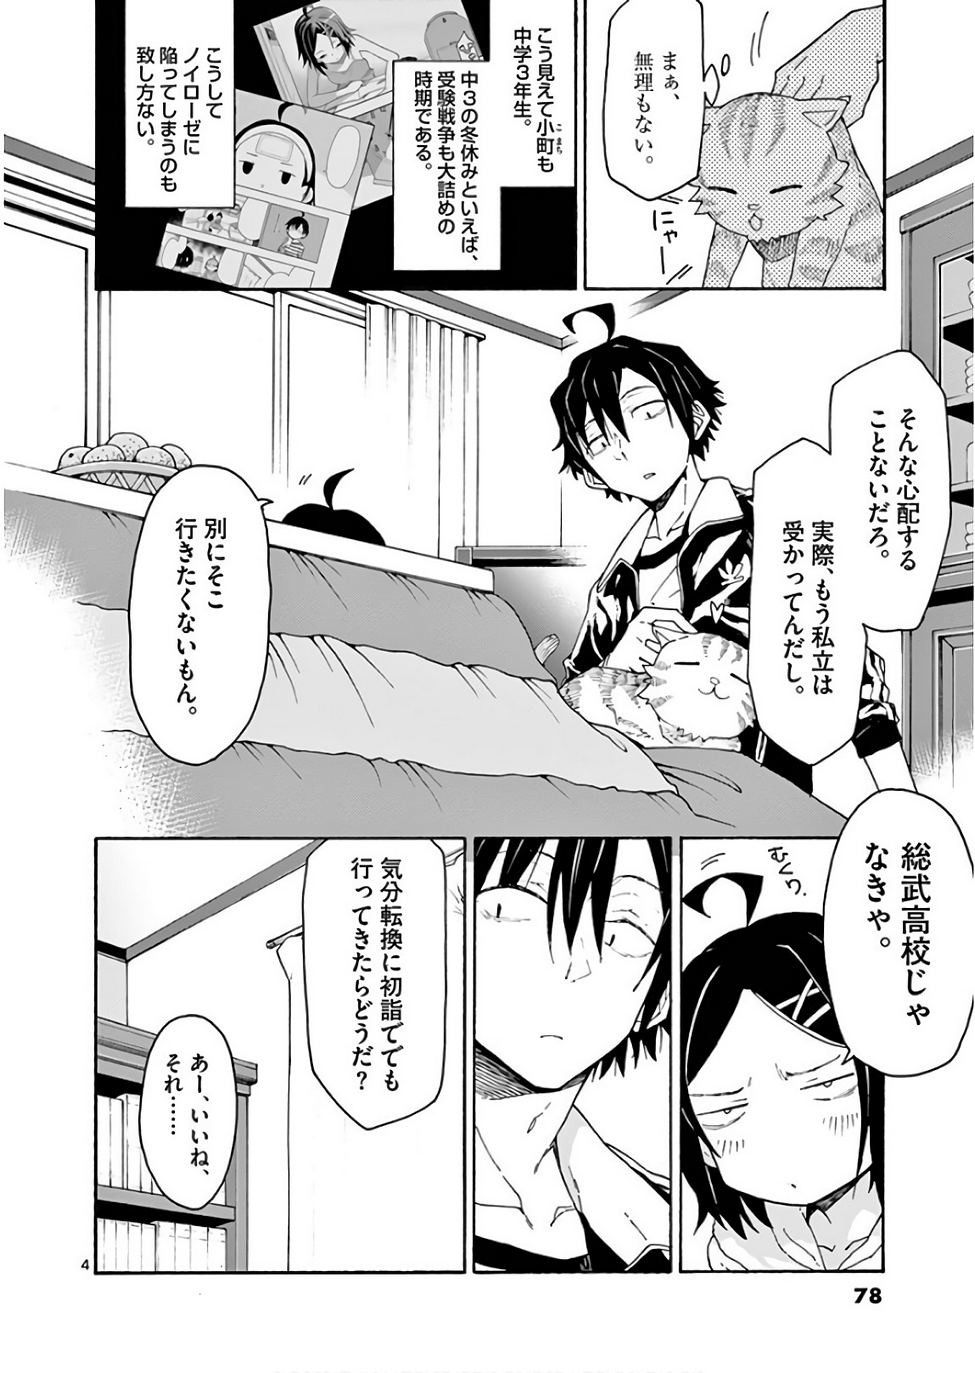 Yahari Ore no Seishun Rabukome wa Machigatte Iru. @ Comic - Chapter 73 - Page 4